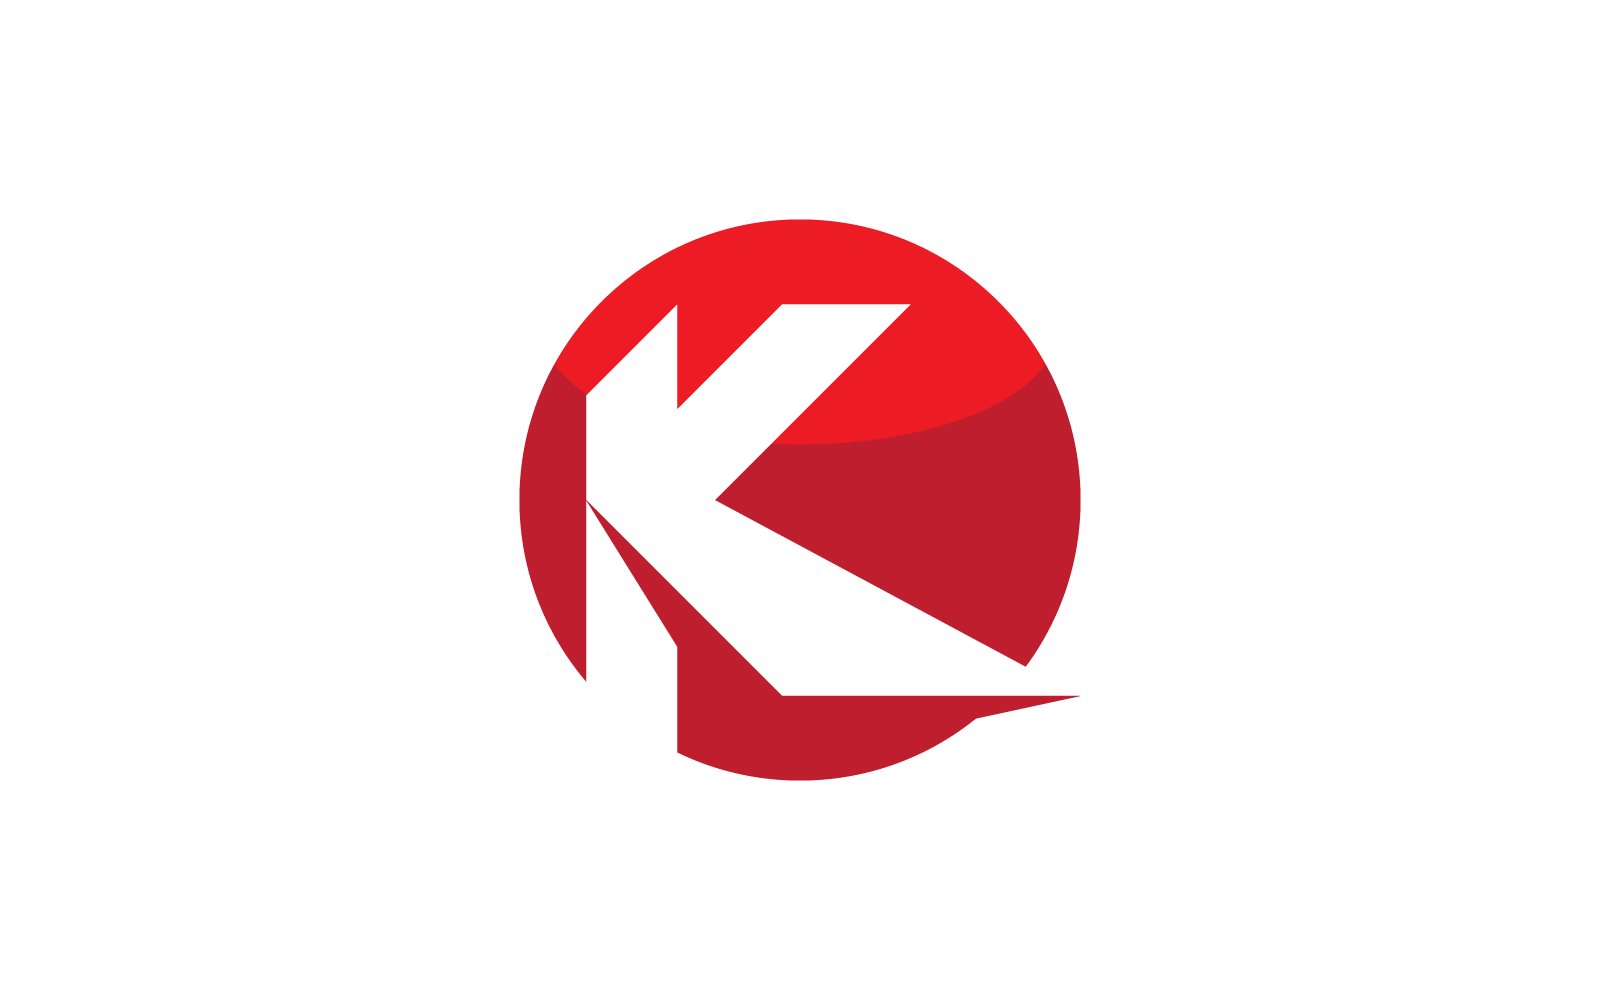 K Anfangsbuchstabe Logo Vektor Illustration flaches Design